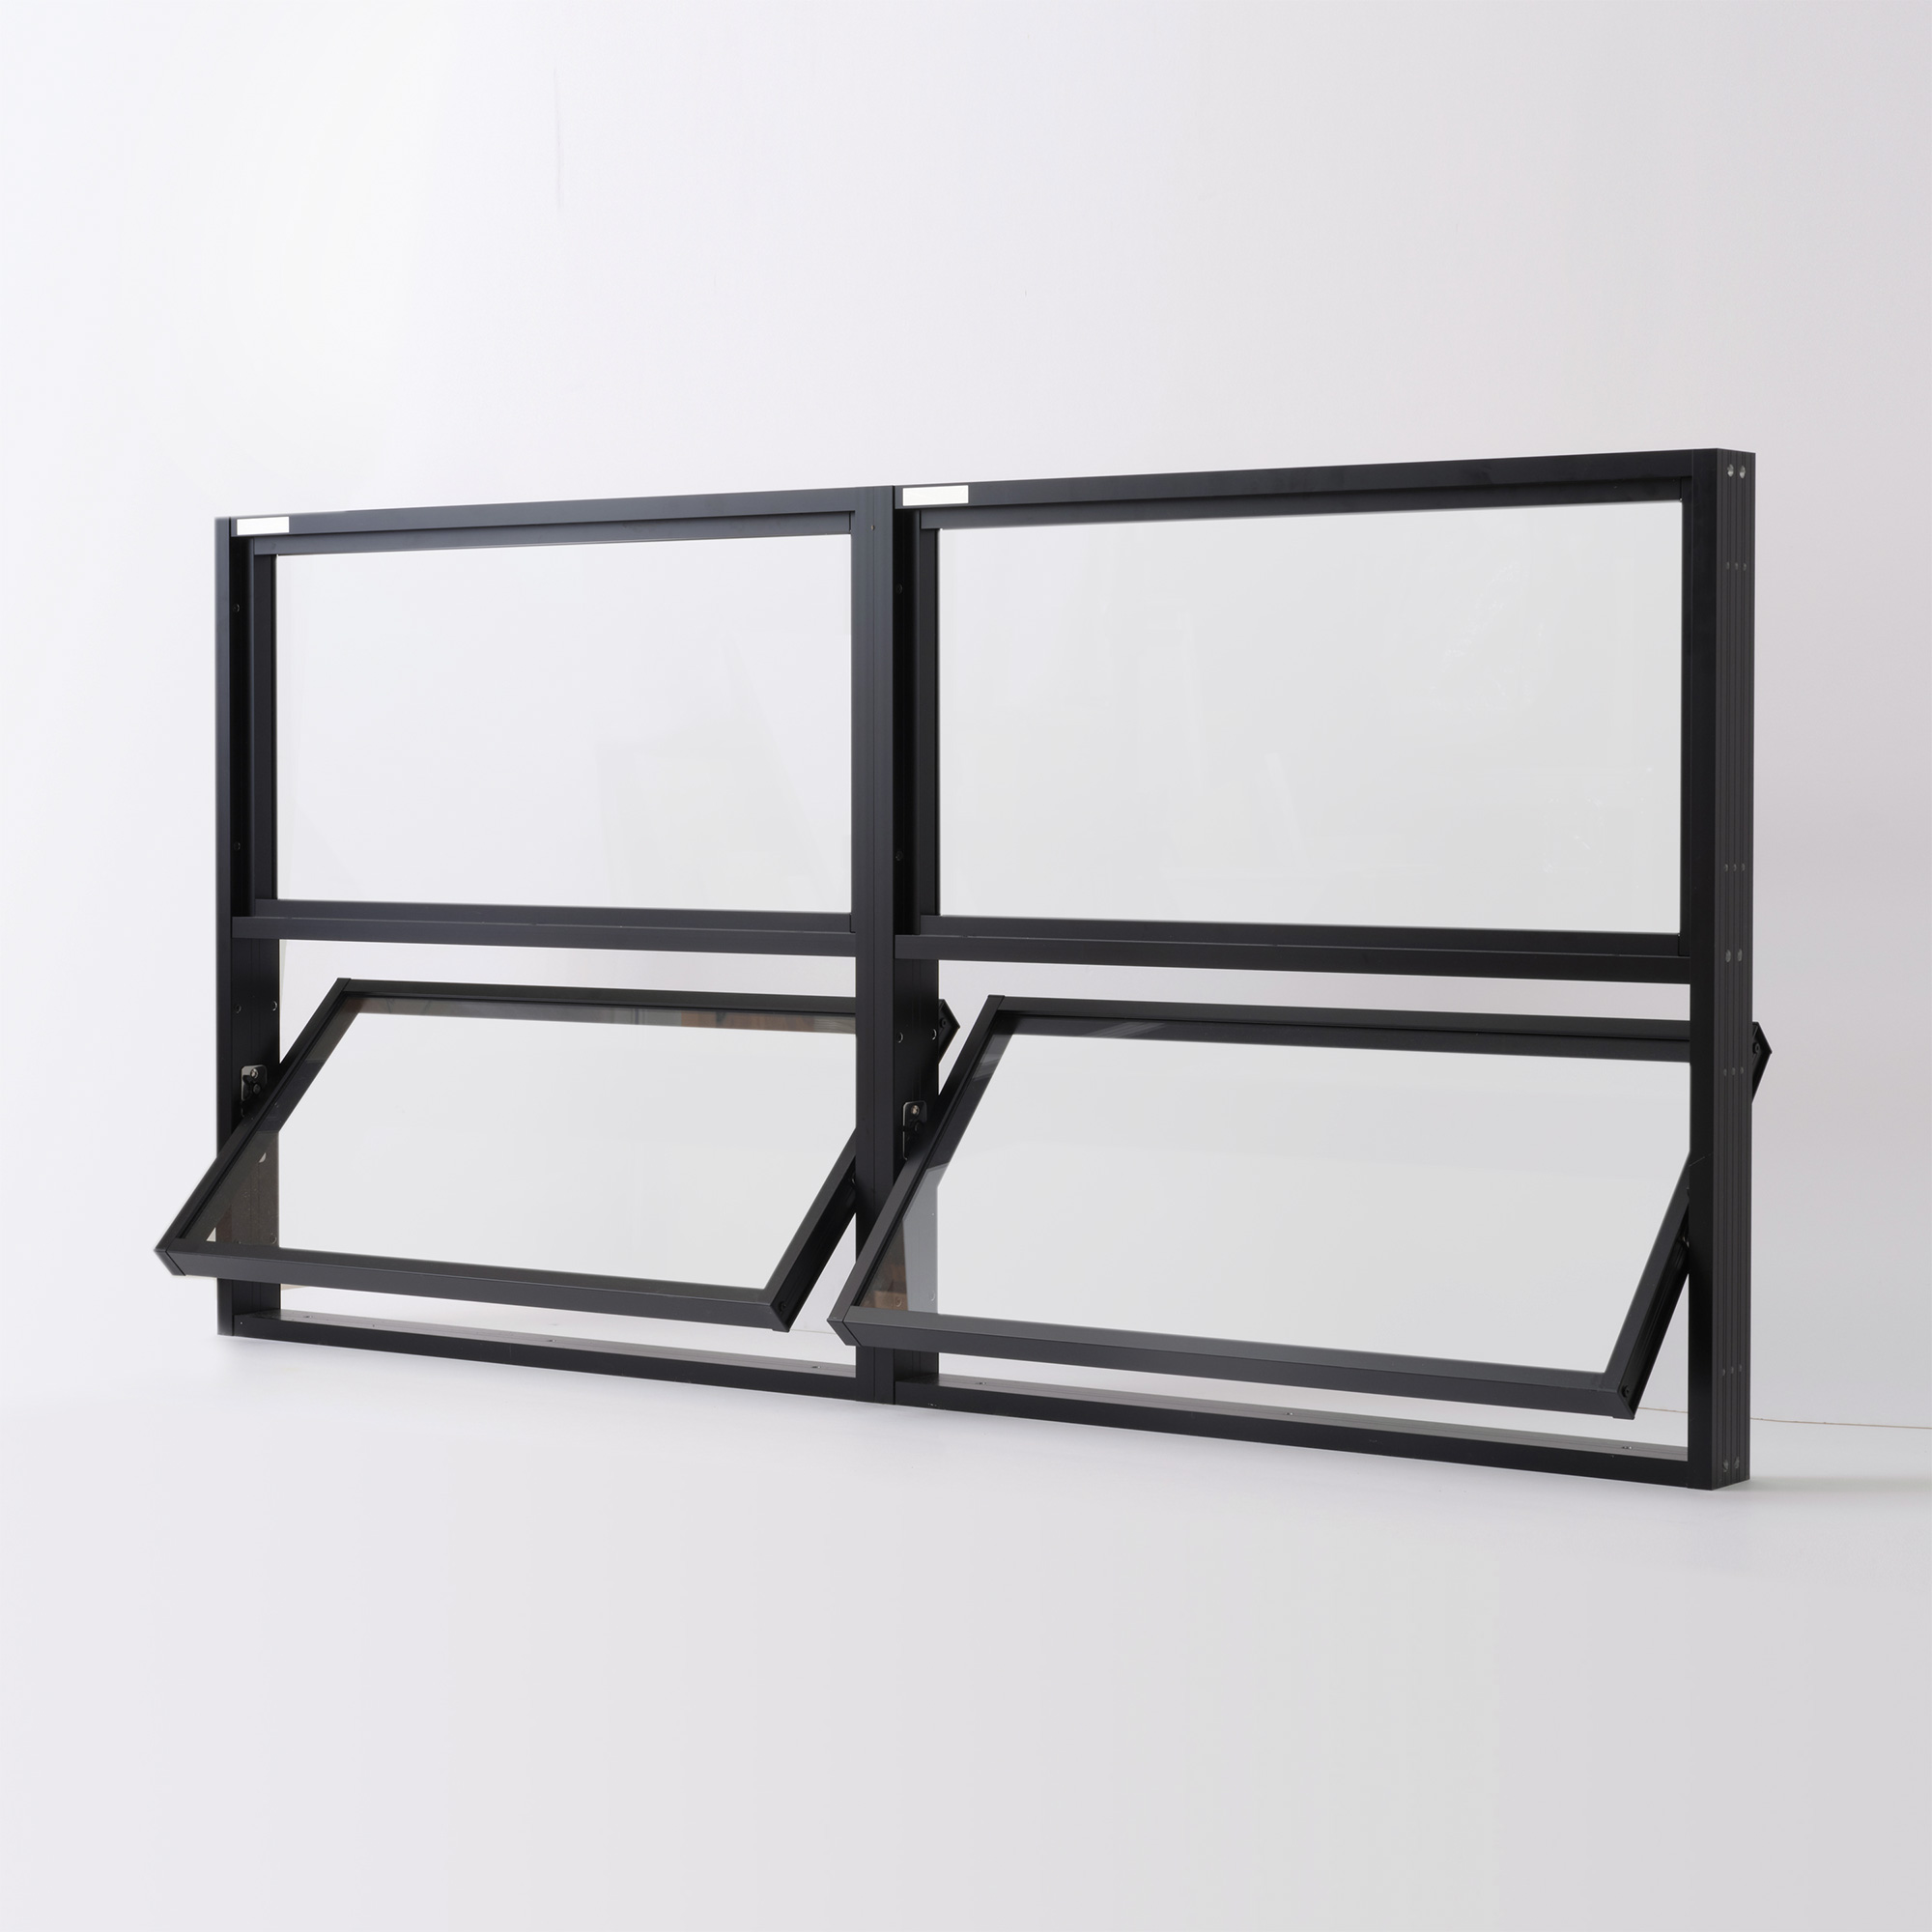 室内アルミサッシ FIX窓 ブラック 樹脂パネル DW-DR013-02-G201 FIX窓（上）＋回転窓（下）の2連結　W1400 H700（W700 上H350 下H350）クリアガラス